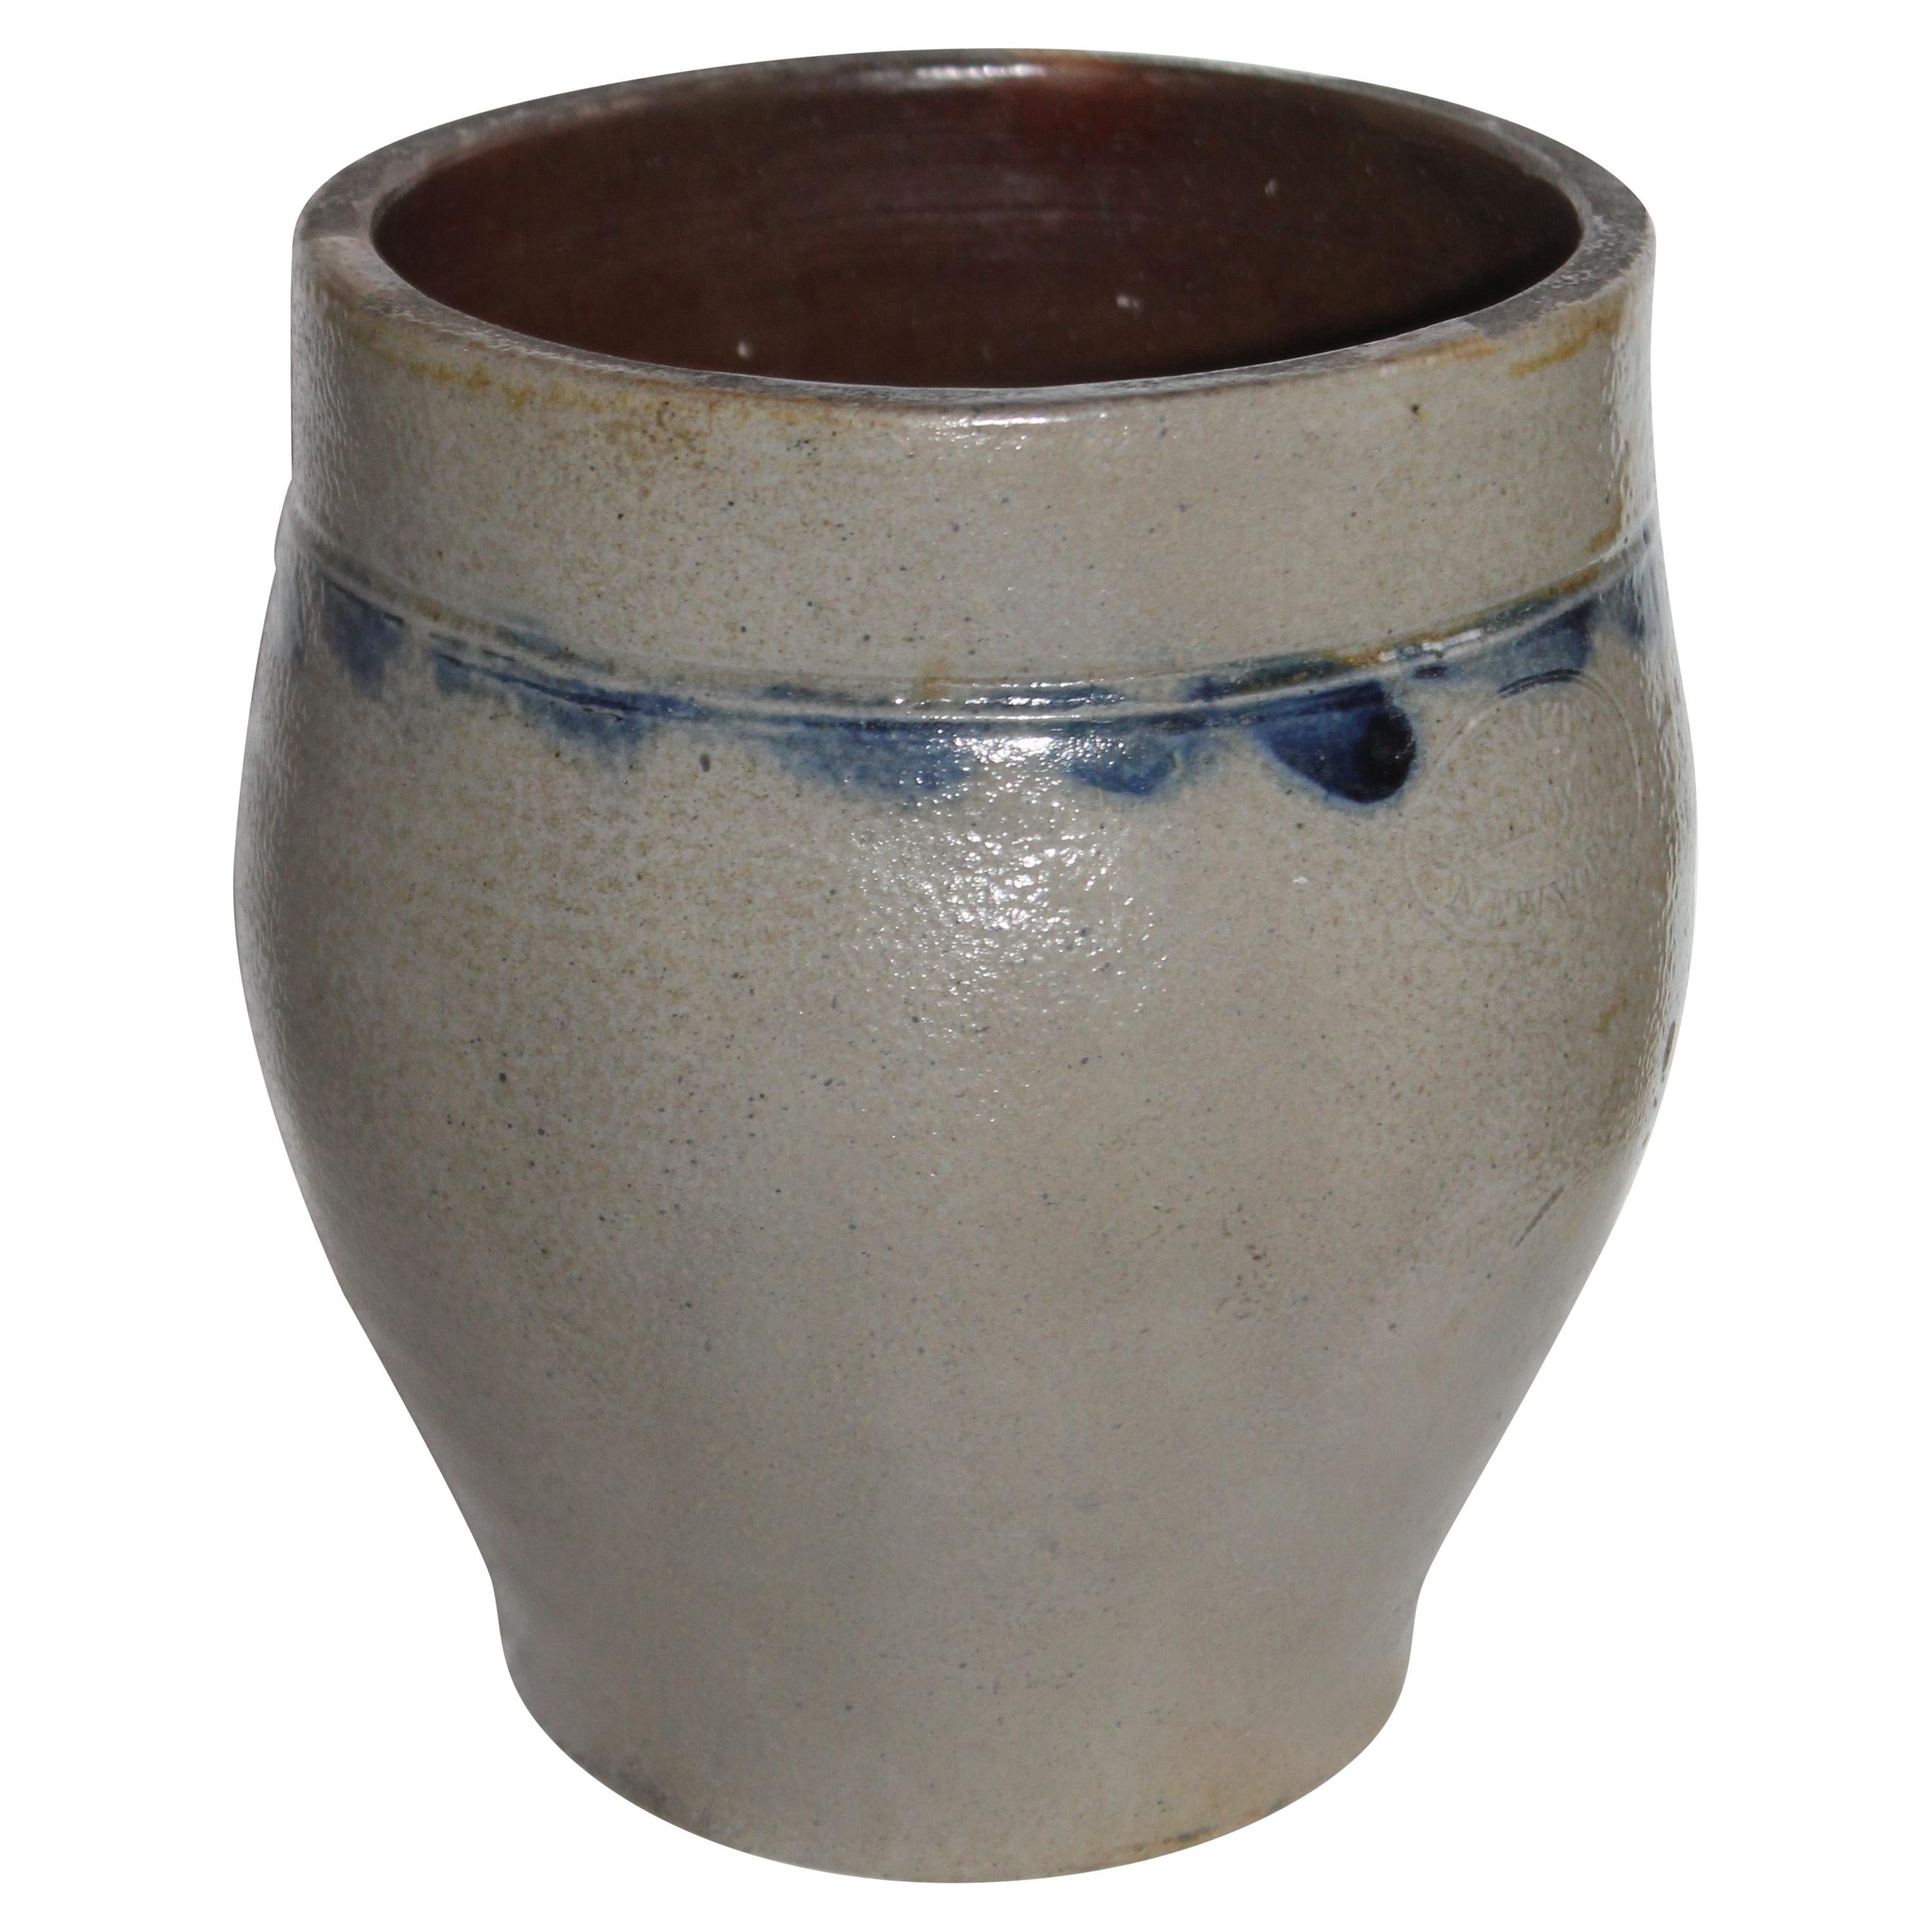 Smith Stoneware Jar Crock from NY